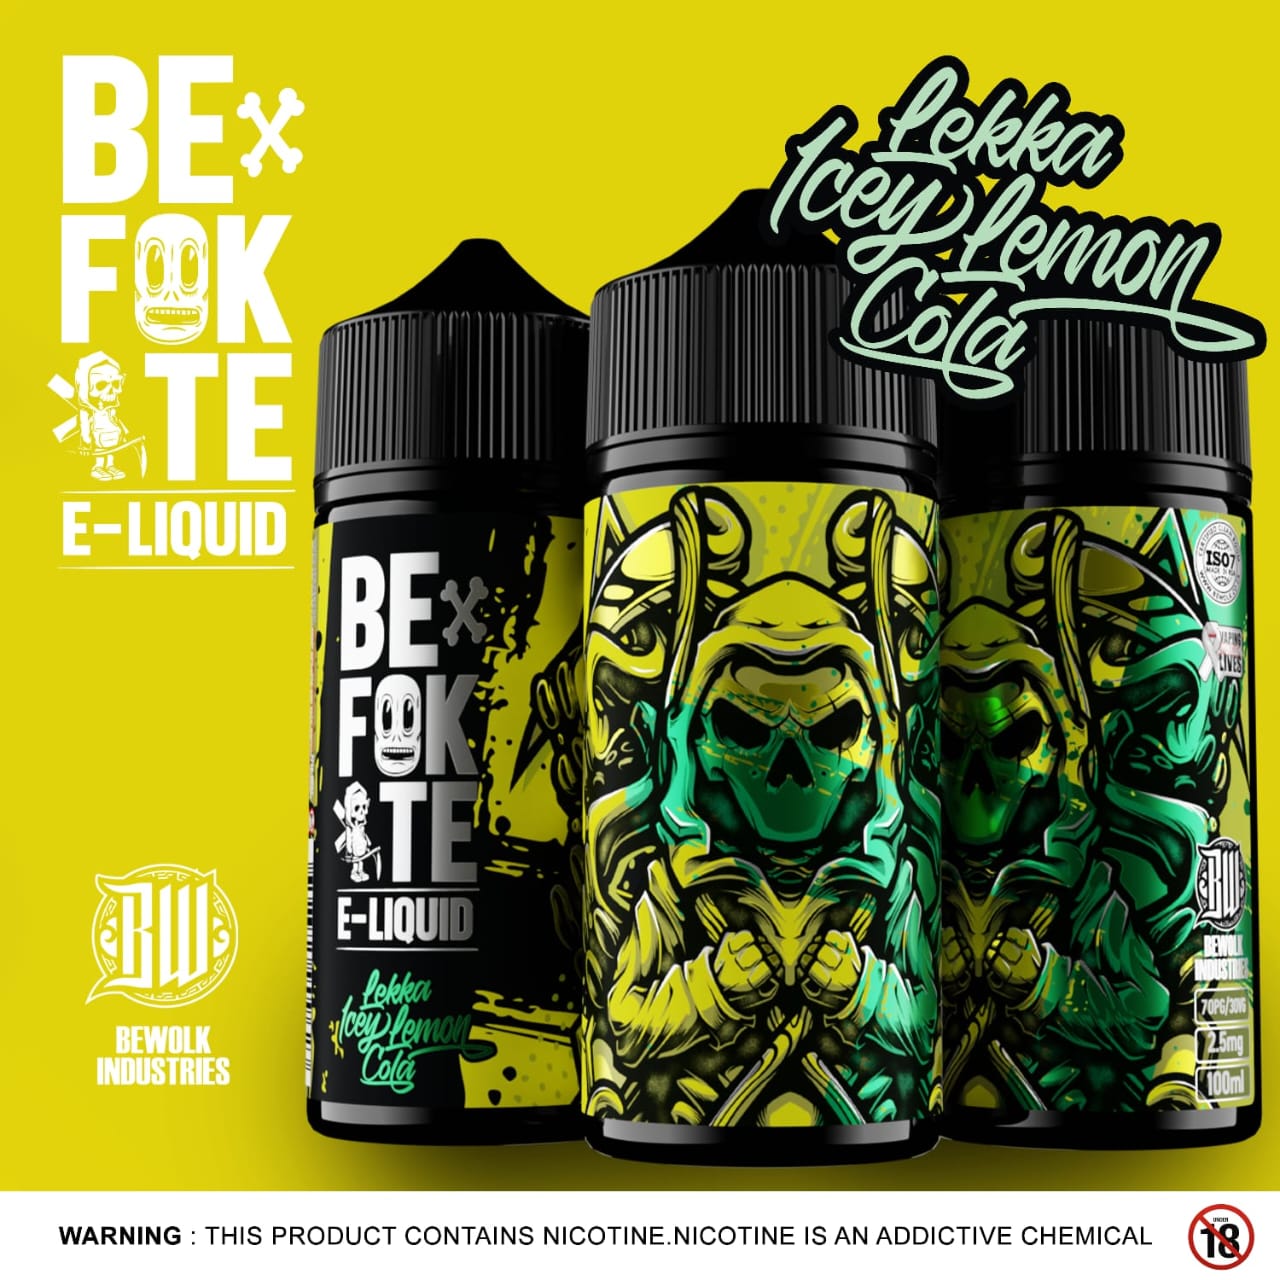 Bef#kte E-Liquid - Lekka Icey Lemon Cola